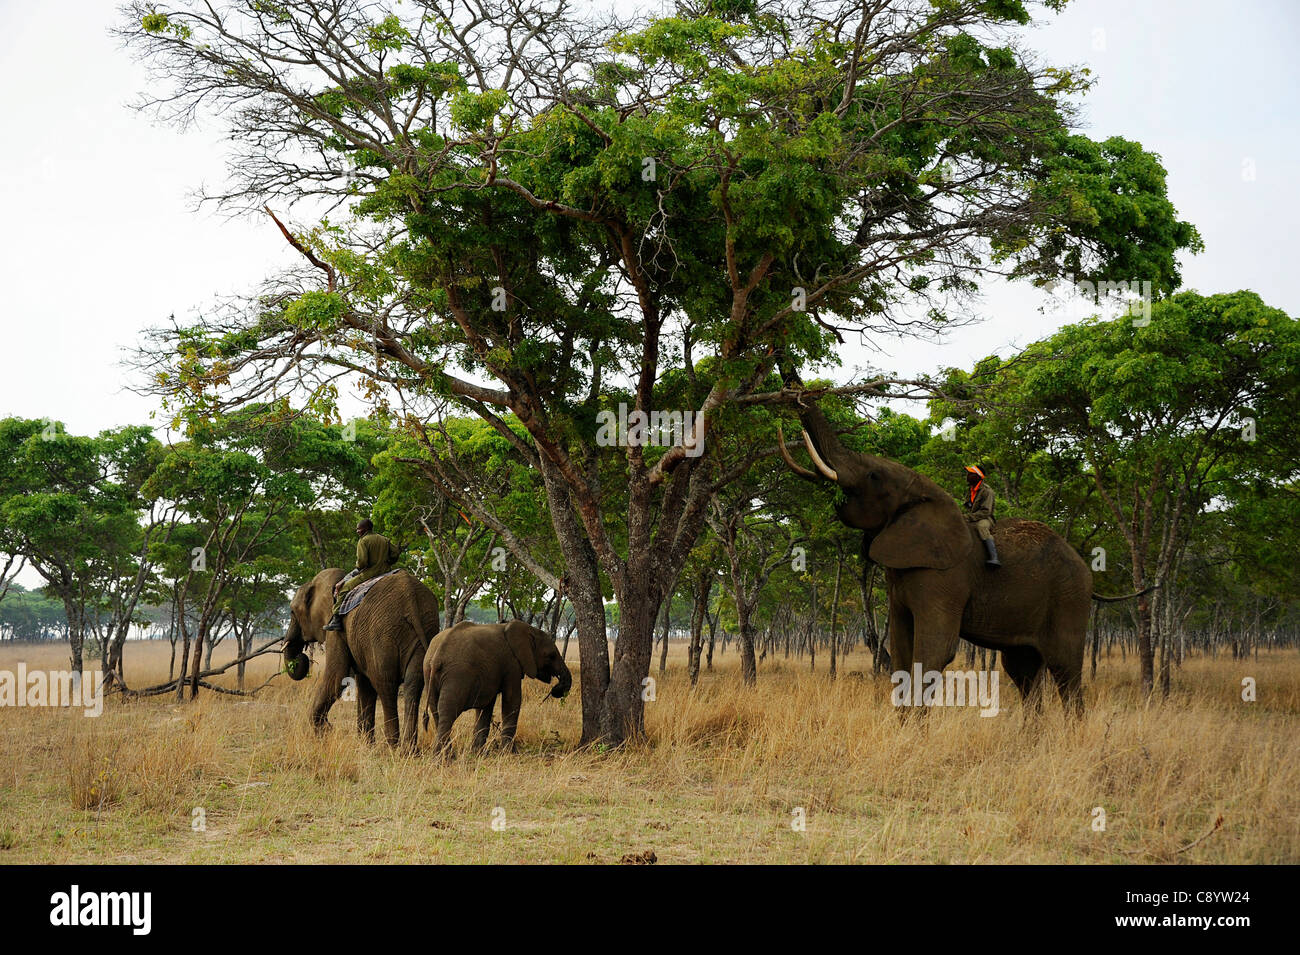 African elephants enjoying the freedom of Imire Safari Ranch in Marondera, Zimbabwe. Stock Photo